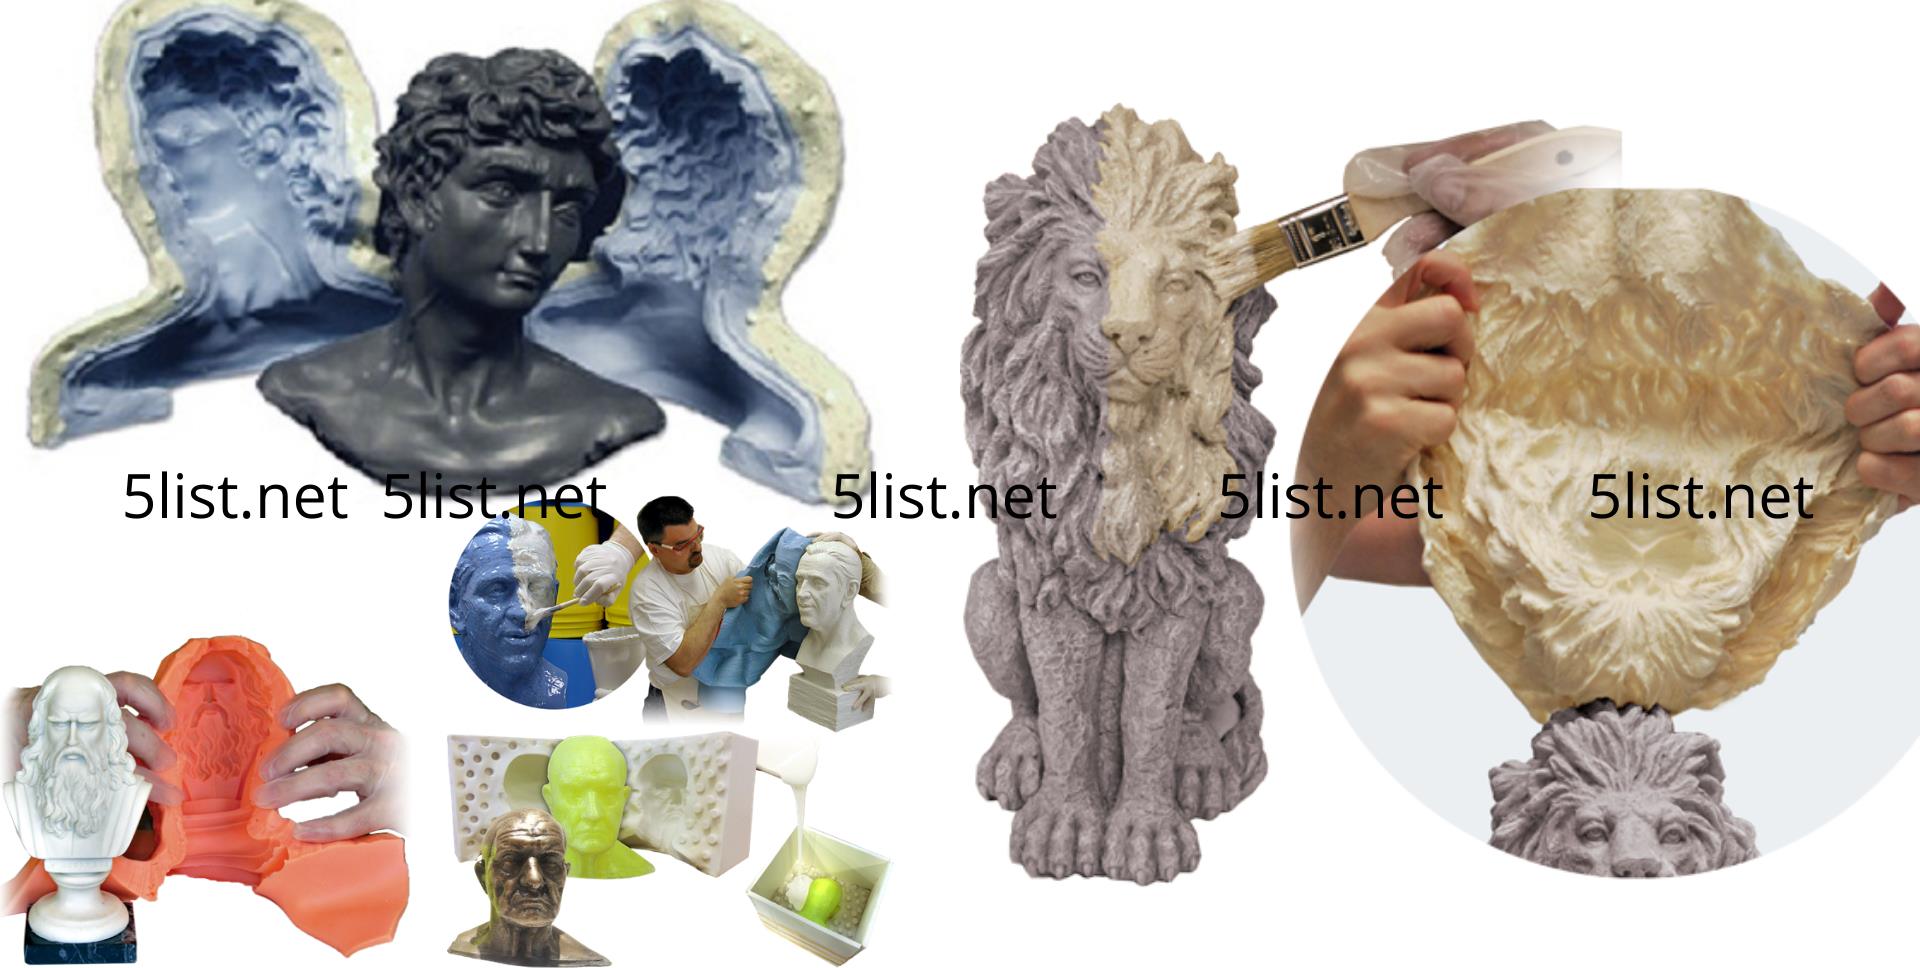 Khuôn silicon là một dạng khuôn mềm, được dùng sử dụng để sản xuất nhiều sản phẩm đa dạng khác nhau: Tượng Công Giáo, Tượng Phật Giáo, Tượng Trang Trí, Chậu Cây Cảnh, Bàn Ghế Giả Đá, Cầu Thang Giả Đá Cẩm Thạch, Đổ Xà Bông, Đổ Sáp nến - Nến Thơm, Sản Xuất Tượng Ông Thần Tài - Thổ Địa, Sản xuất vật phẩm bằng các nguyên liệu đa dạng như: xi măng, bột gỗ, bột đá, poly, composite, resin, nến nóng chảy, sáp nóng chảy, bê tông, thạch cao, gốm sứ ... đa số những sản phẩm, vật phẩm bạn nhìn thấy mỗi ngày đều được làm từ khuôn silicon. Nhiều đơn vị sản xuất hiện tại vẫn đang gặp khó khăn về khâu chế tạo hay gọi tắt là làm khuôn silicon cho sản phẩm. Ở bài viết này, 5list giới thiệu đến bạn 5 địa chỉ nhận làm khuôn silicon và sản xuất sản phẩm silicon theo yêu cầu uy tín.